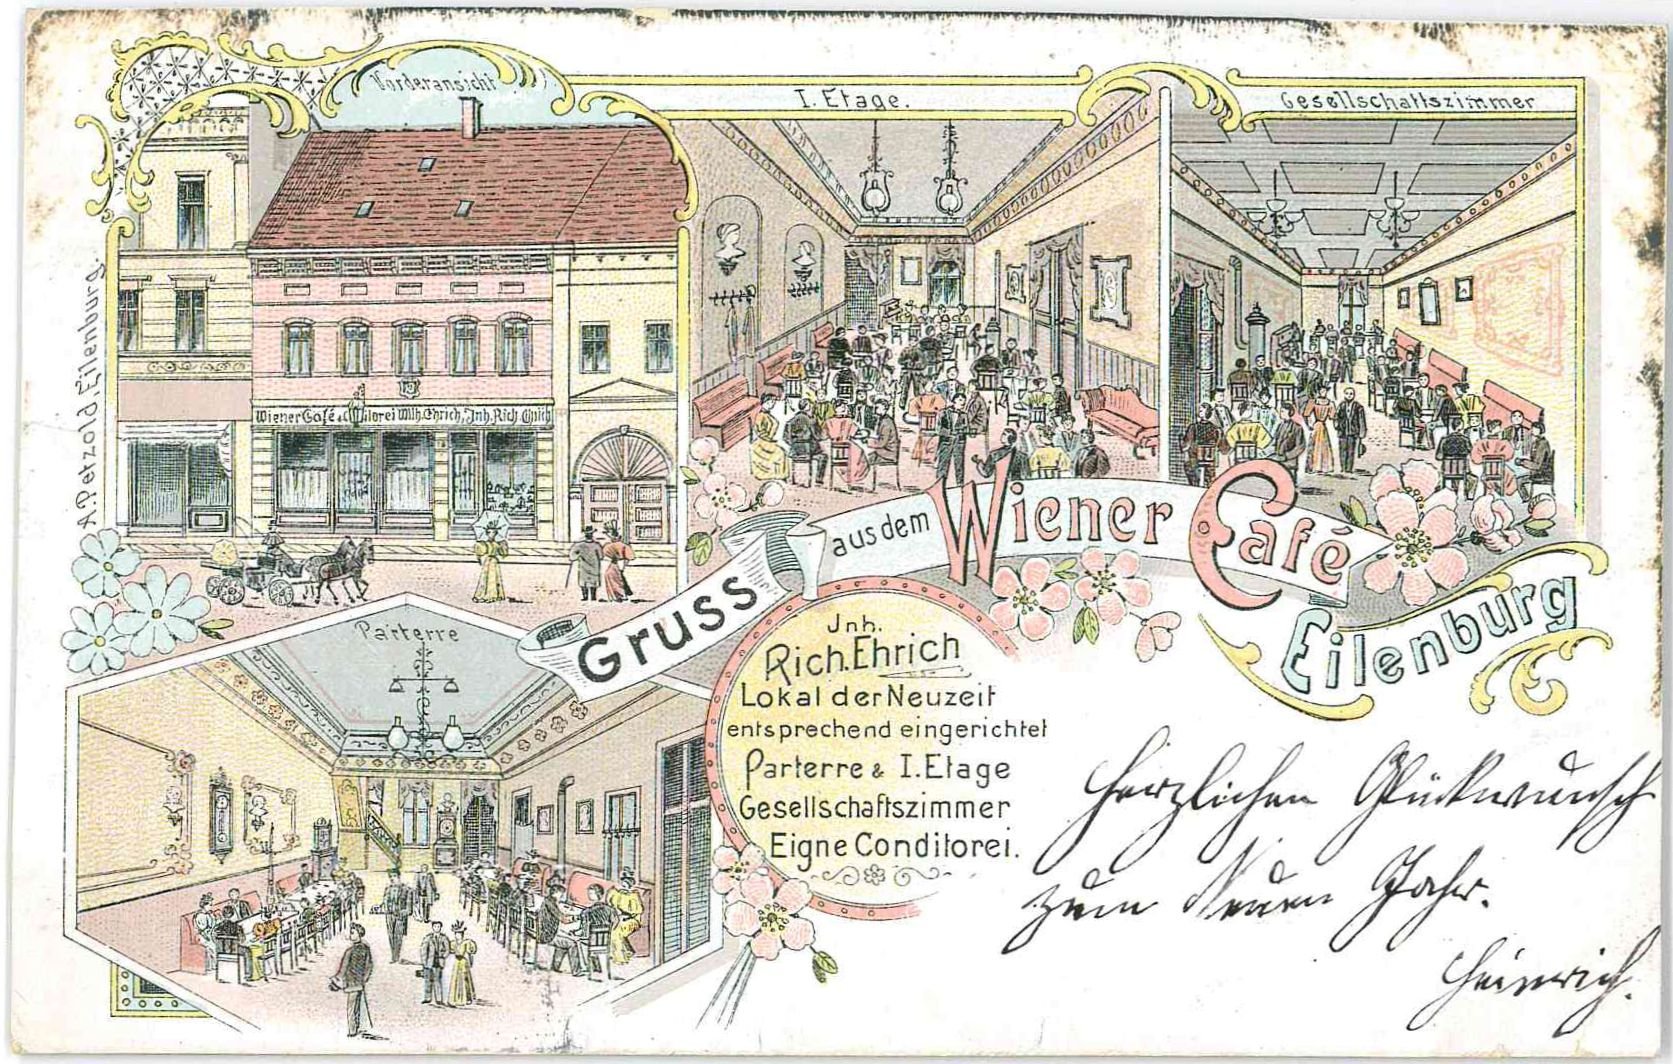 Gruss aus dem Wiener Café Eilenburg (Stadtmuseum Eilenburg RR-P)